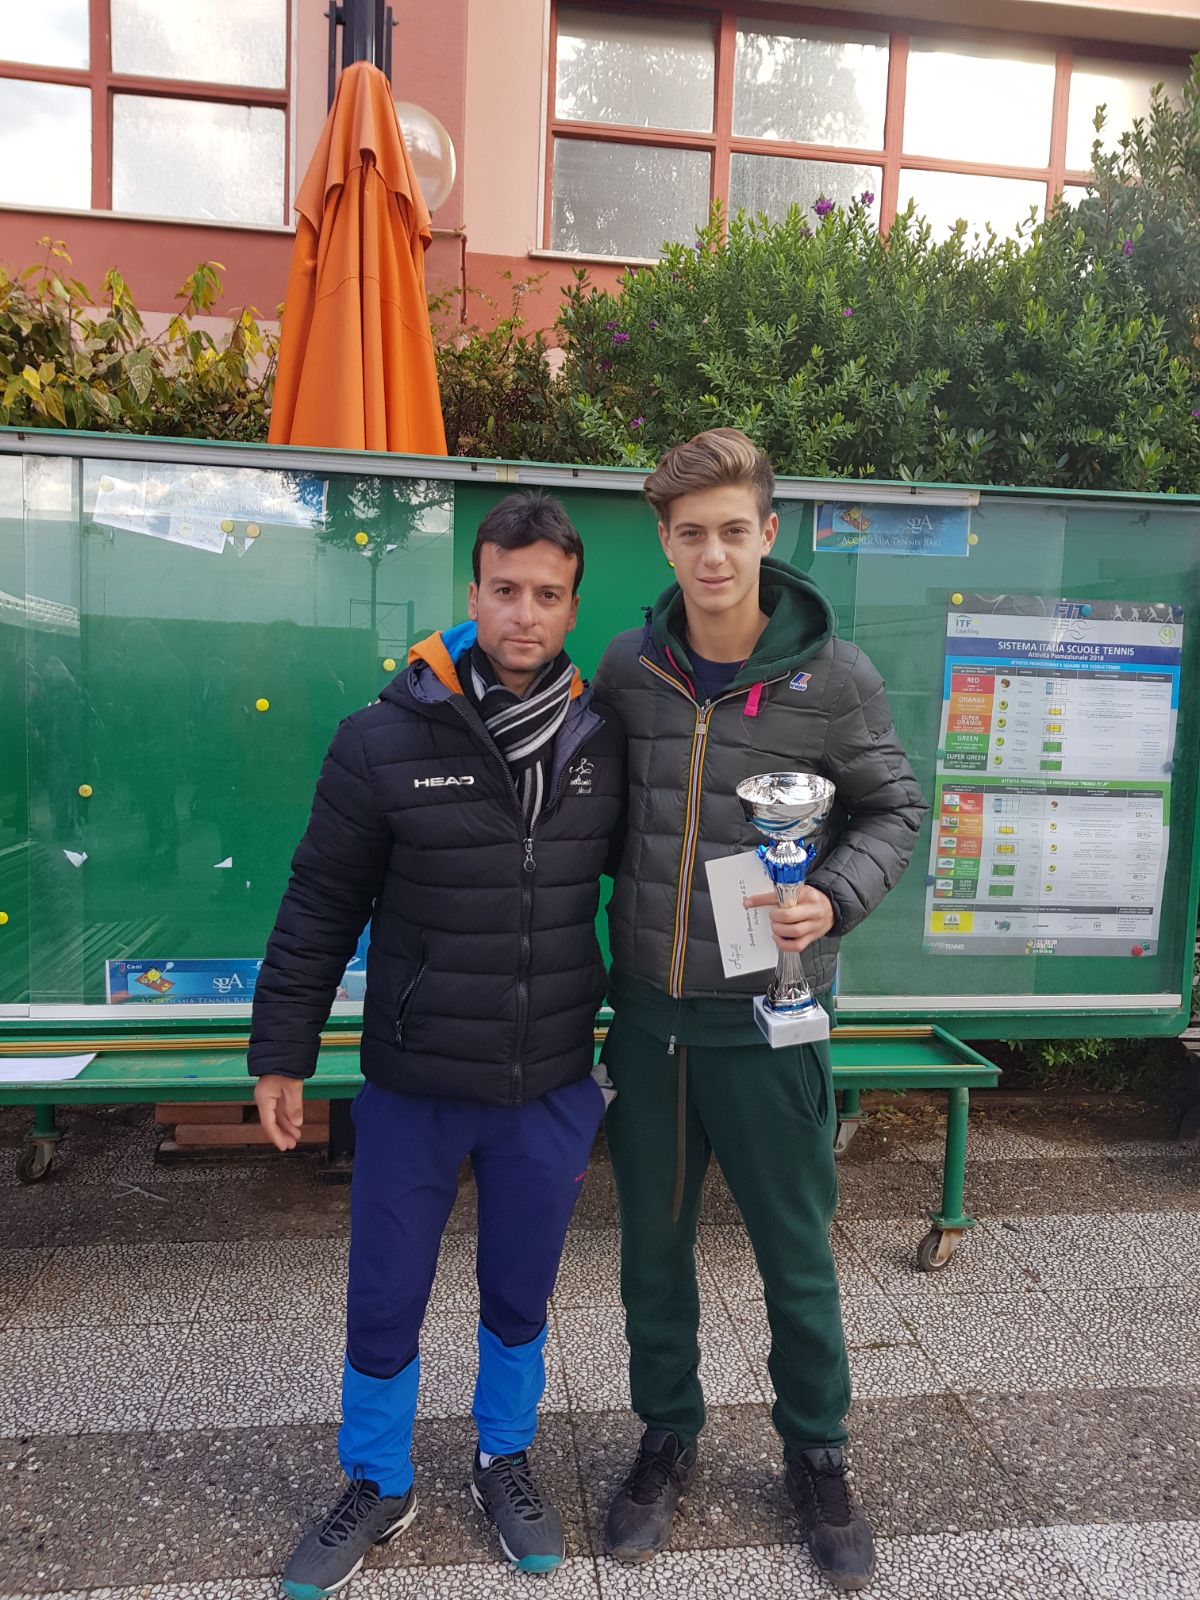 VITA DA ACCADEMIA. Matteo Giordano conquista il torneo nazionale giovanile di Bari tra gli under 14. E’ la vittoria numero 64 del 2017